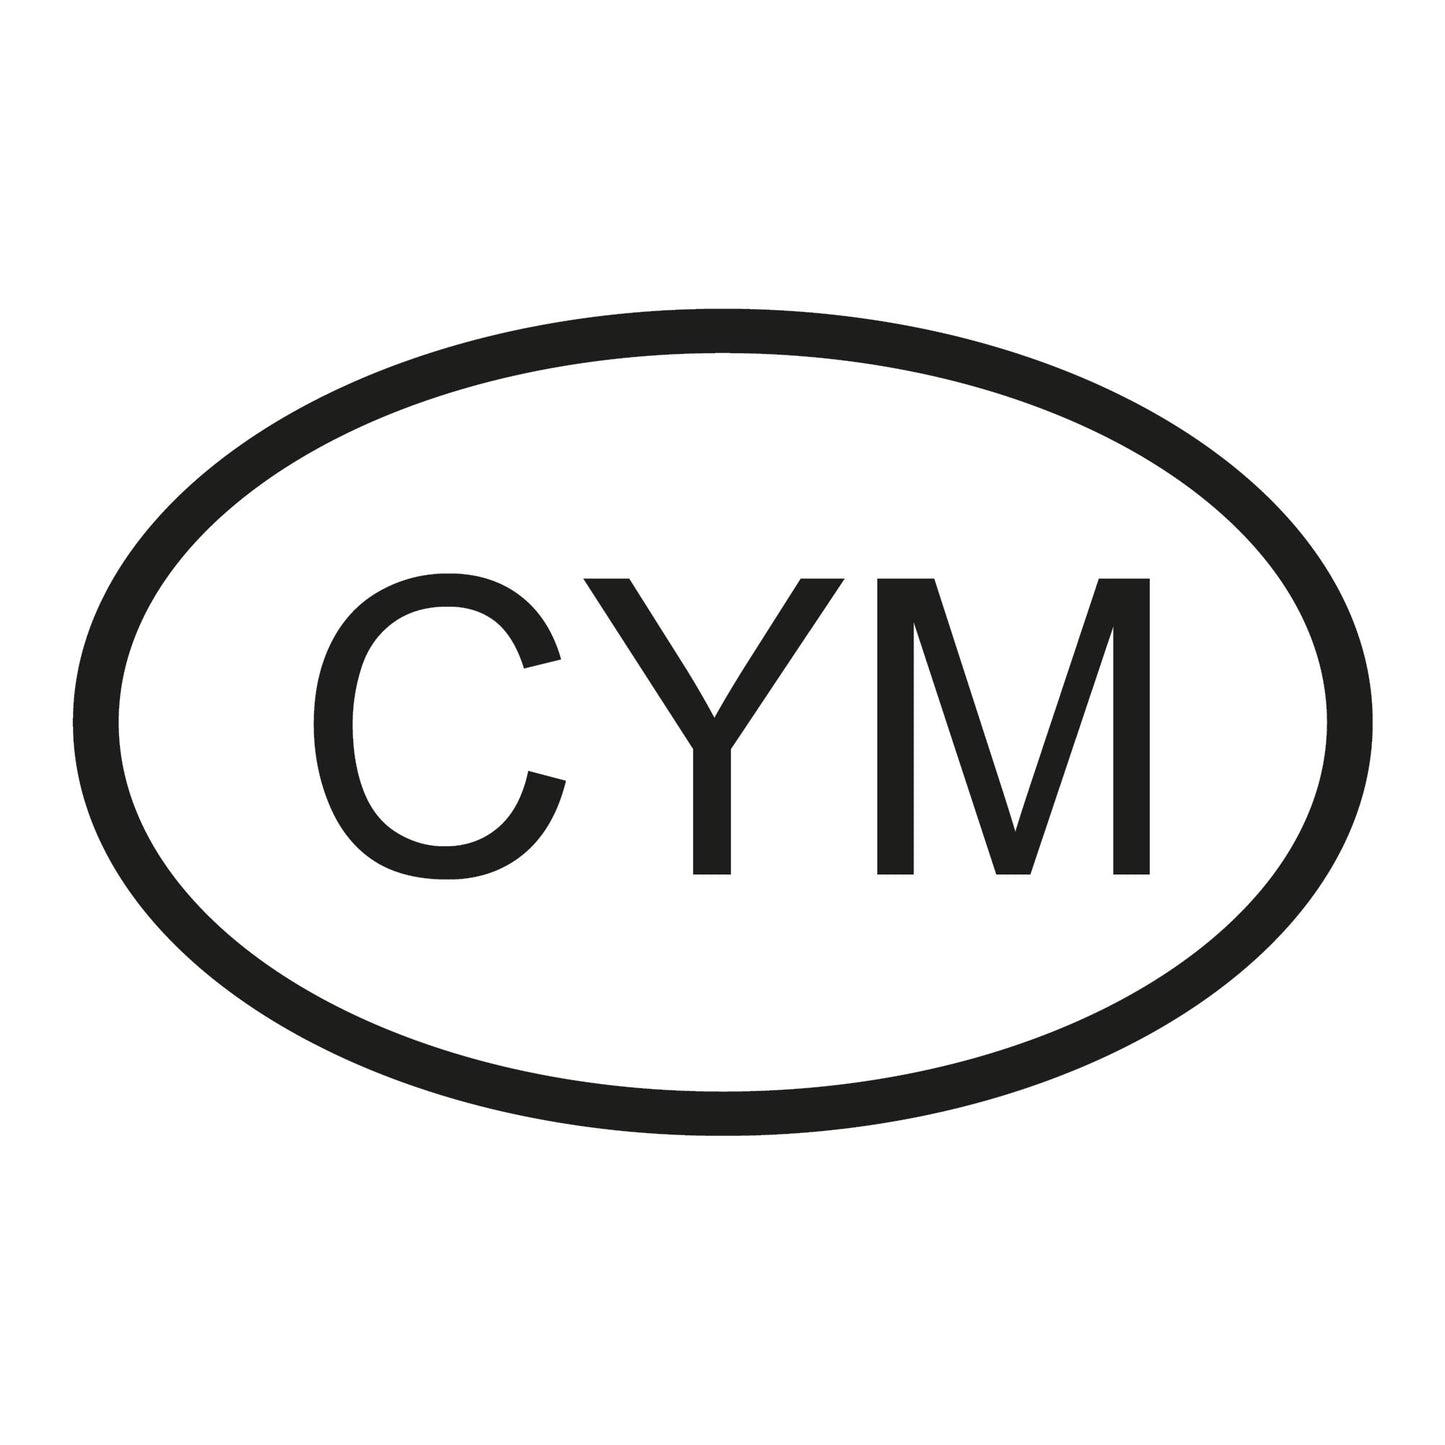 Autoaufkleber - Wales CYm - 11x70 mm